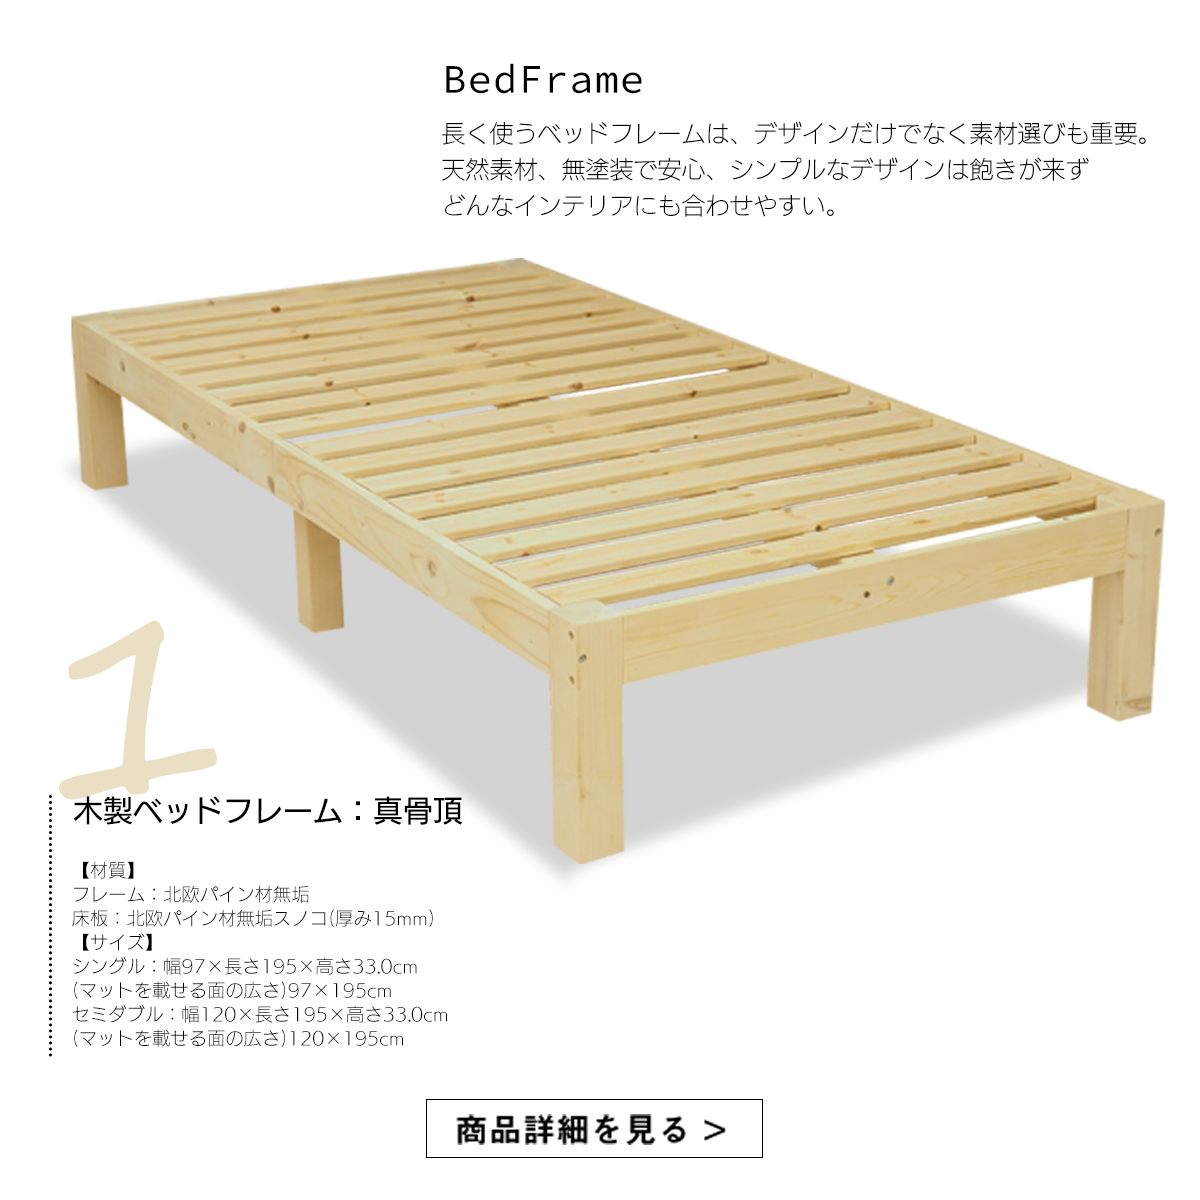 マットレス付きベッド セミダブル 寝具セット ポケットコイル と 木製